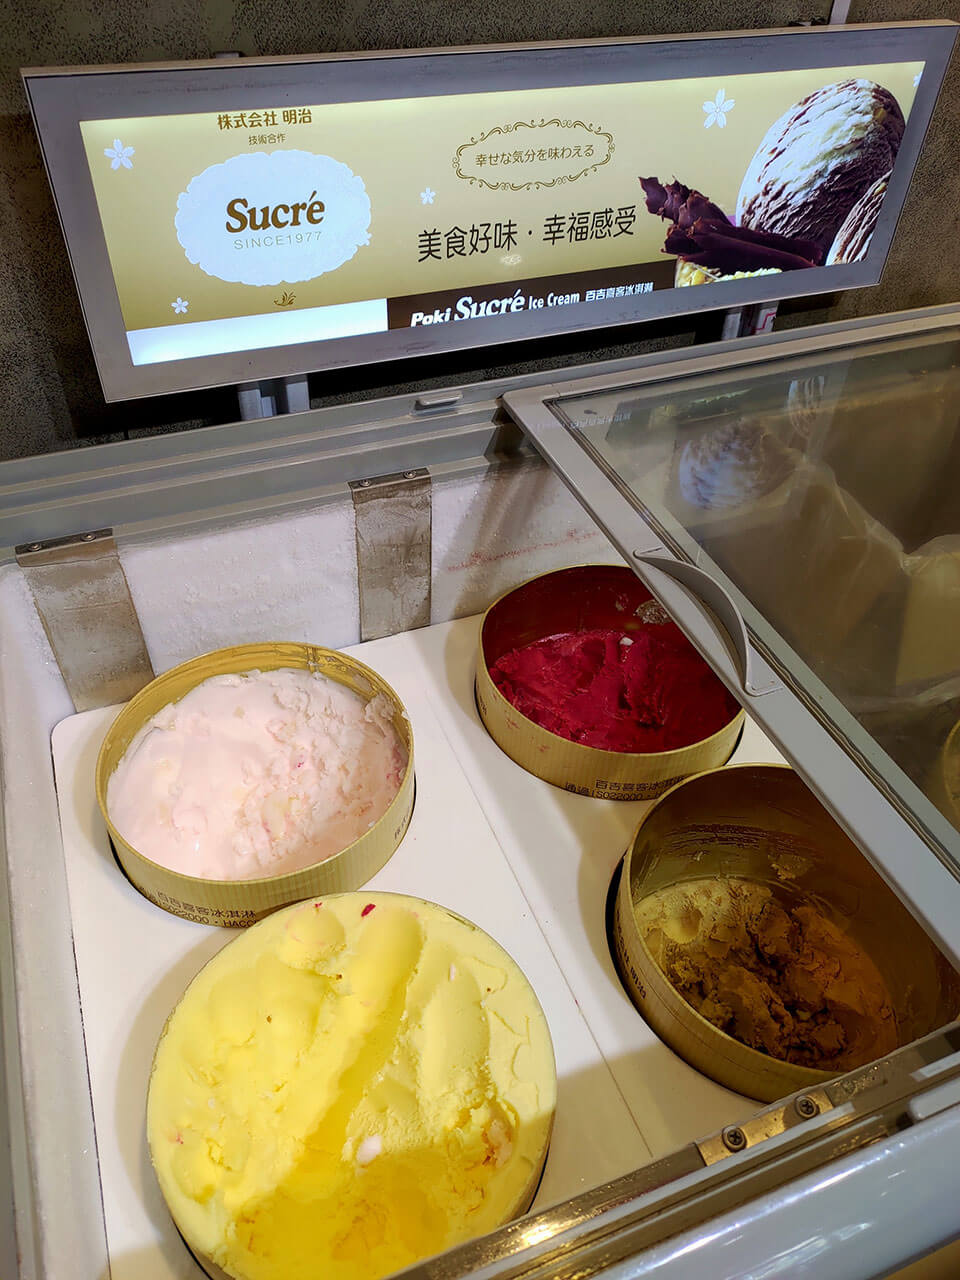 冰淇淋－是明治的技術合作的Sucre耶